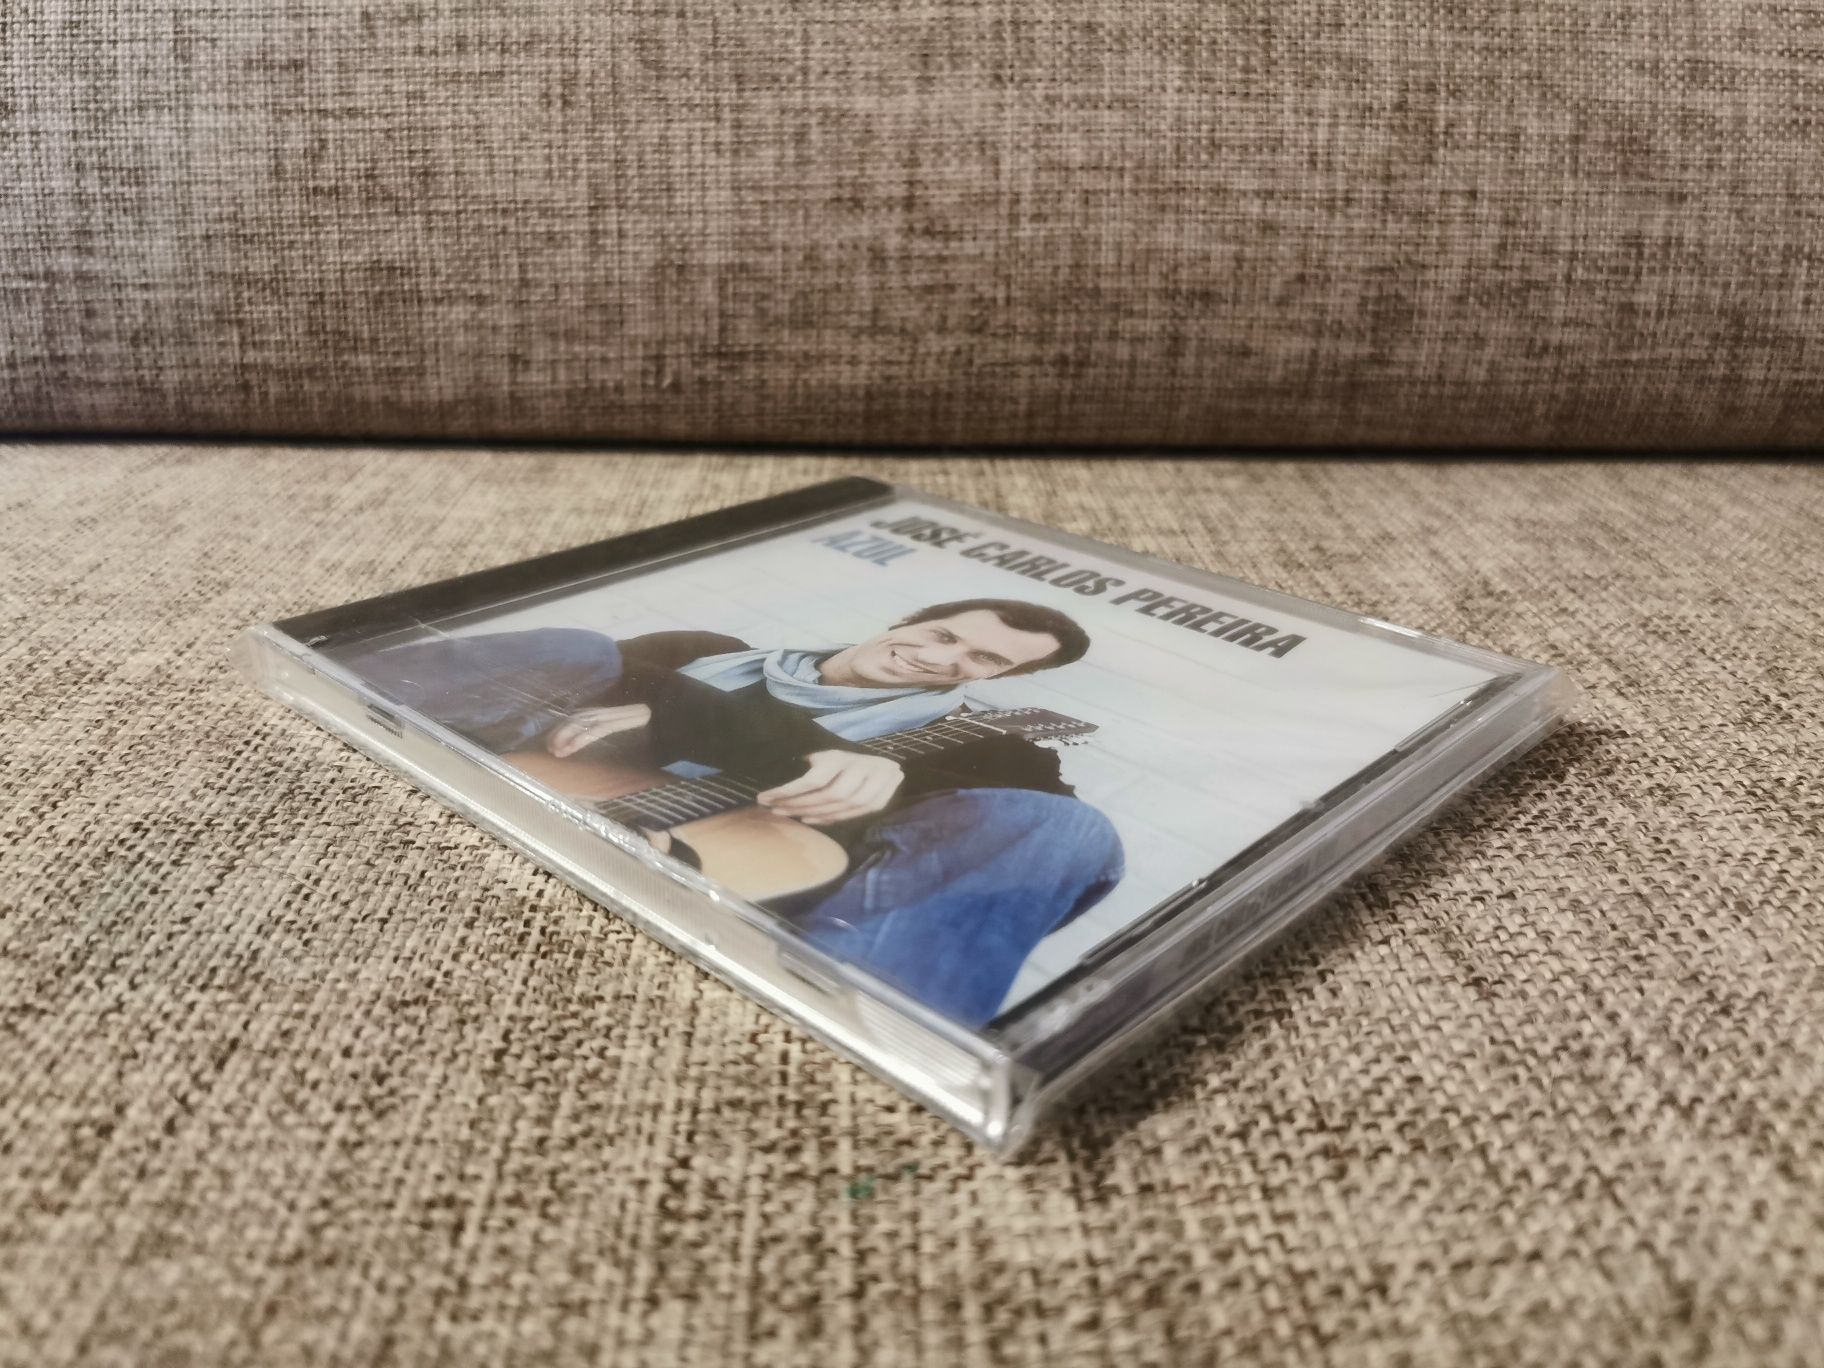 Muzyka CD Album Azul - Jose Carlos Pereira